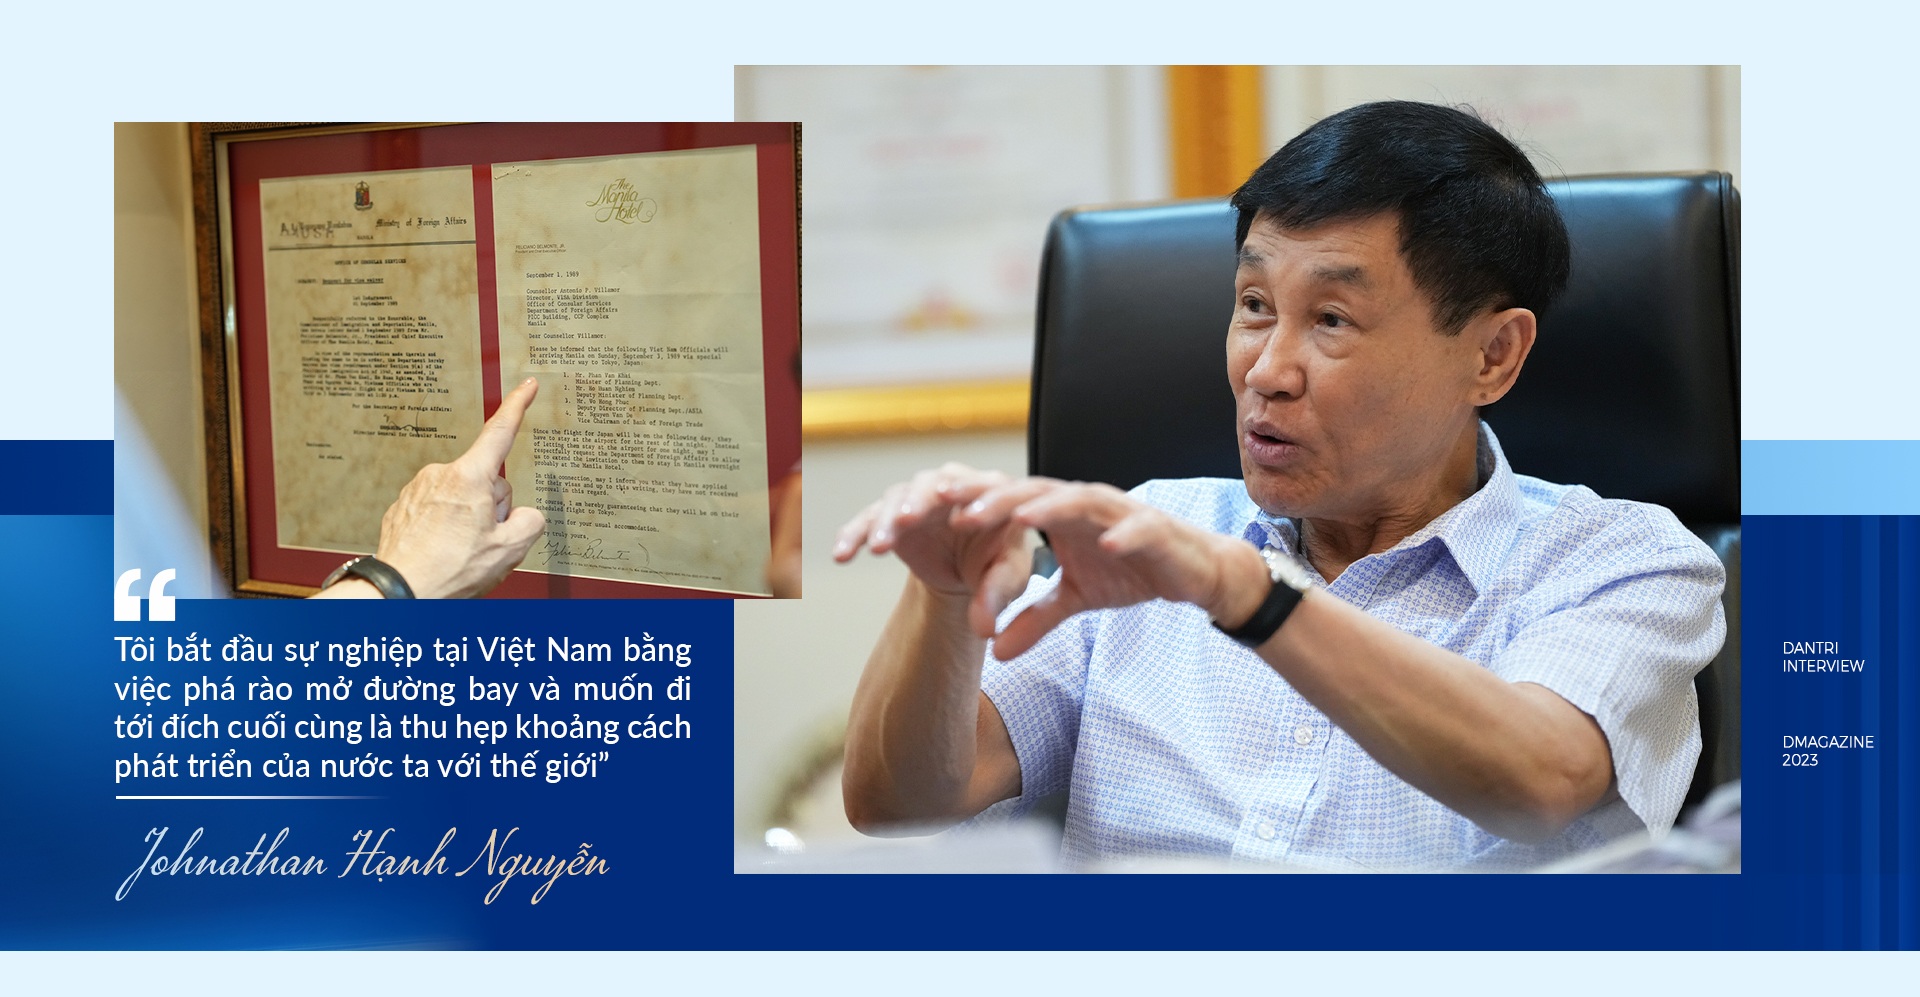 View - Cuộc gặp với cố Thủ tướng Phạm Văn Đồng thay đổi cuộc đời ông Johnathan Hạnh Nguyễn | Báo Dân trí